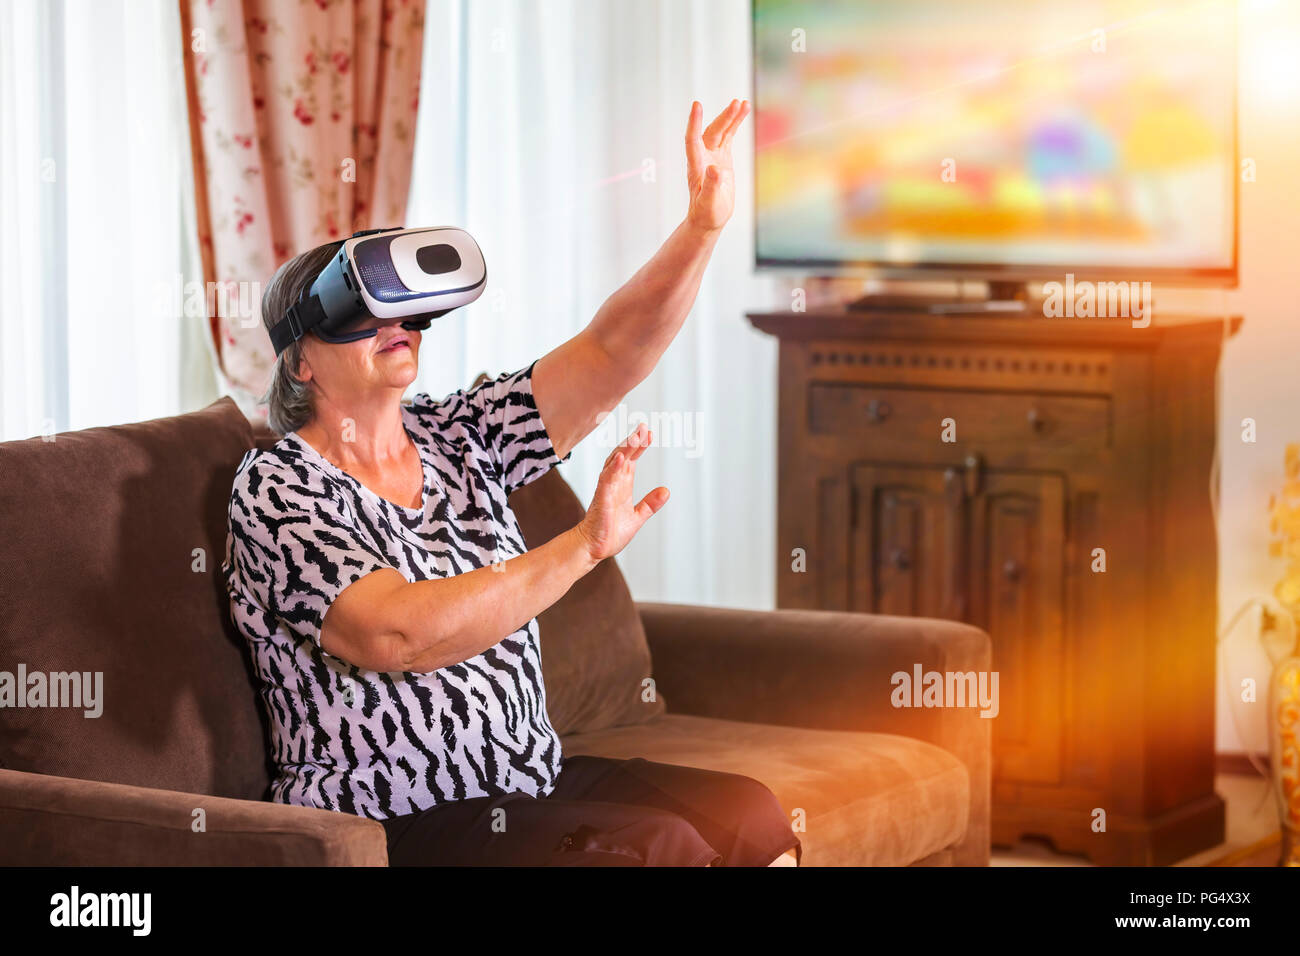 Ältere Frau mit virtuellen Headset oder die 3D-Brille Videospiel zu Hause spielt. Technologie, Augmented Reality, Unterhaltung und Personen Konzept. Fokus auf h Stockfoto